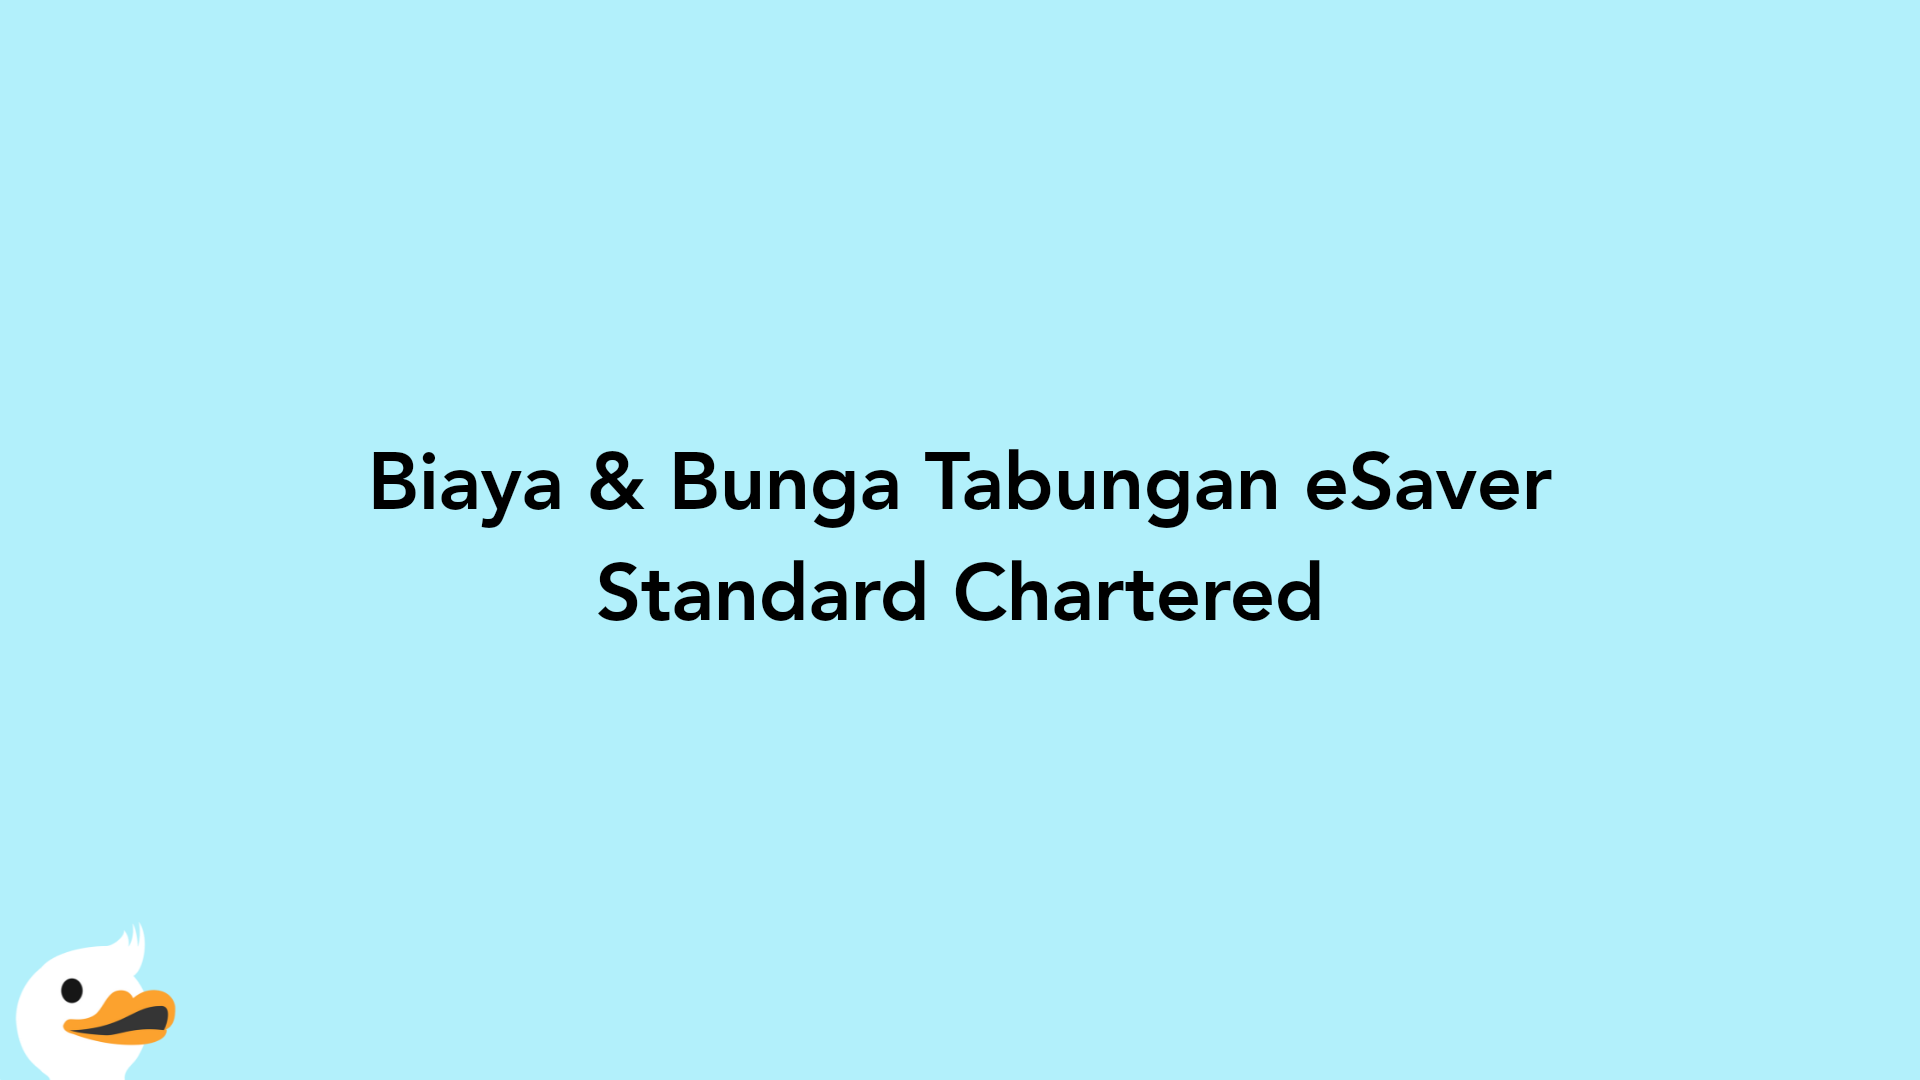 Biaya & Bunga Tabungan eSaver Standard Chartered